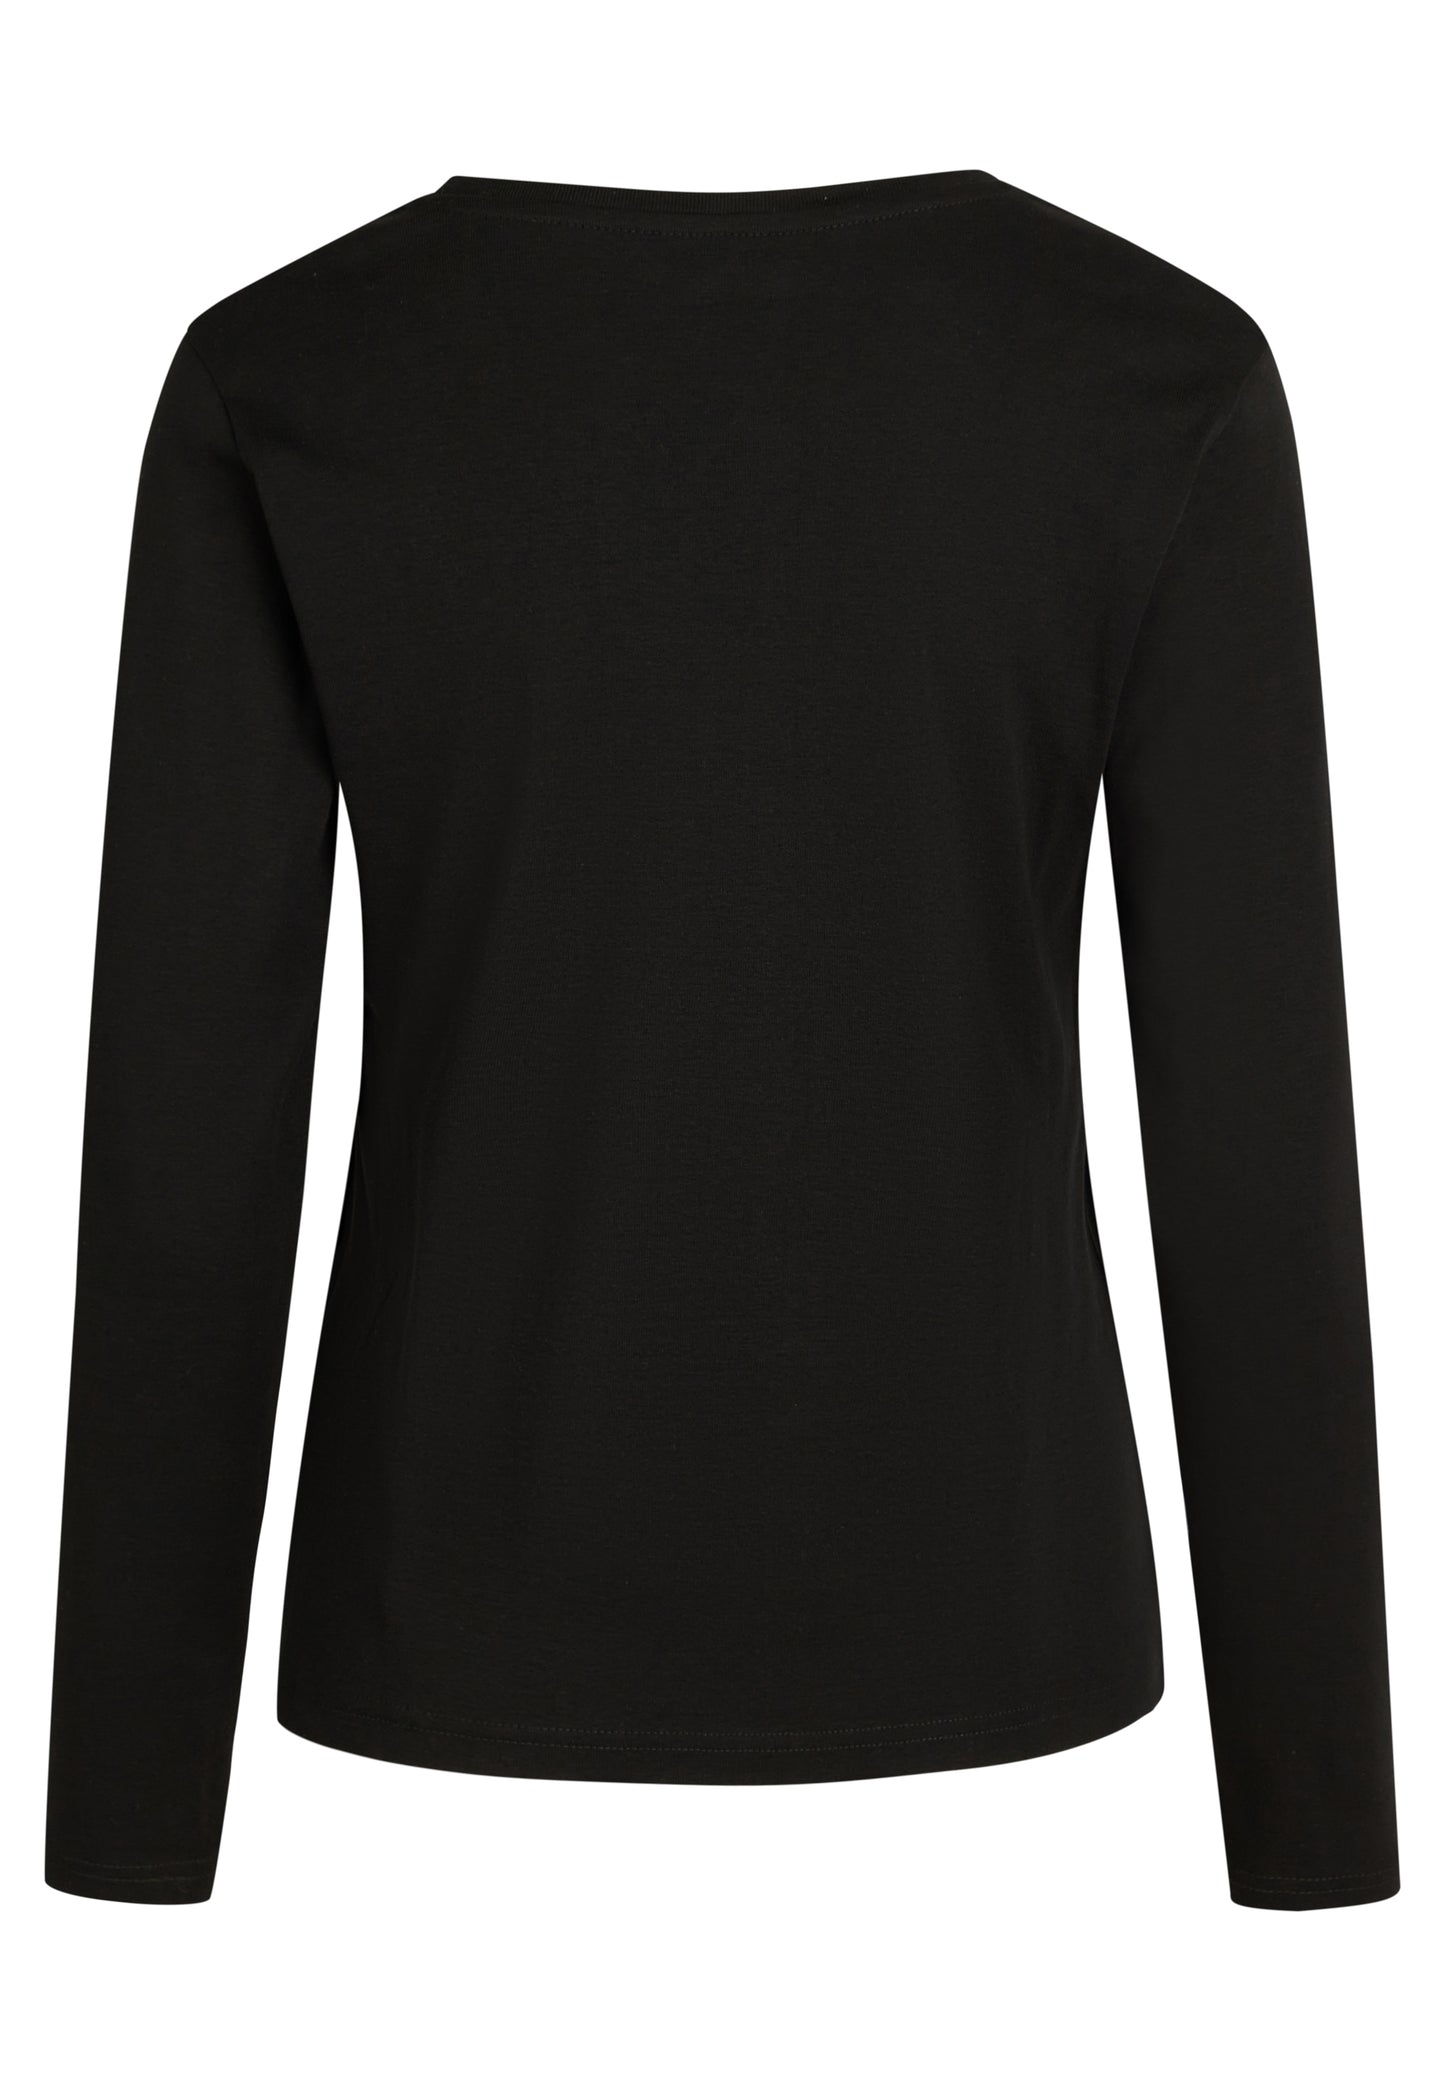 NORVIG Langærmet T-shirt 100% Bomuld til kvinder sort